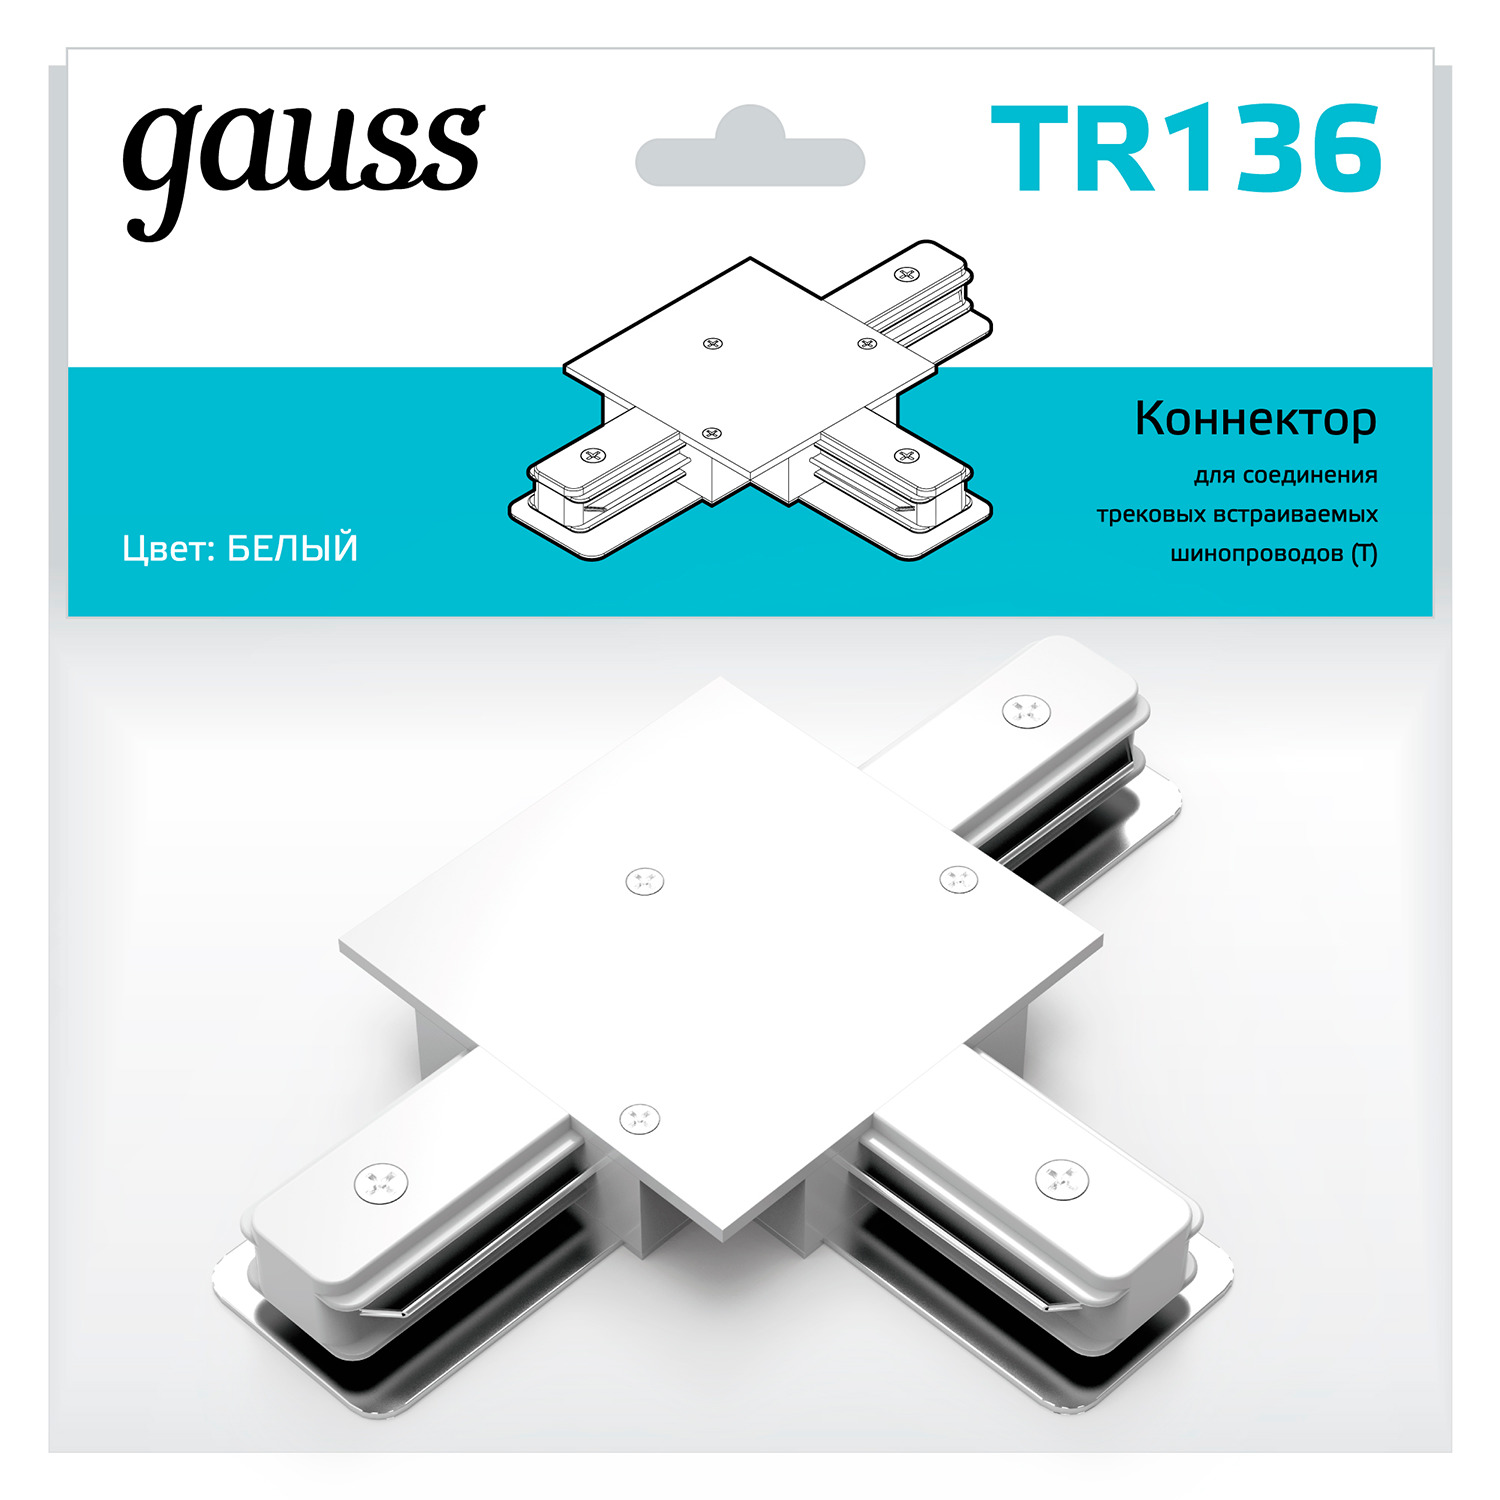 Коннектор Gauss для встраиваемых трековых шинопроводов (T) белый коннектор gauss для встраиваемых трековых шинопроводов гибкий i